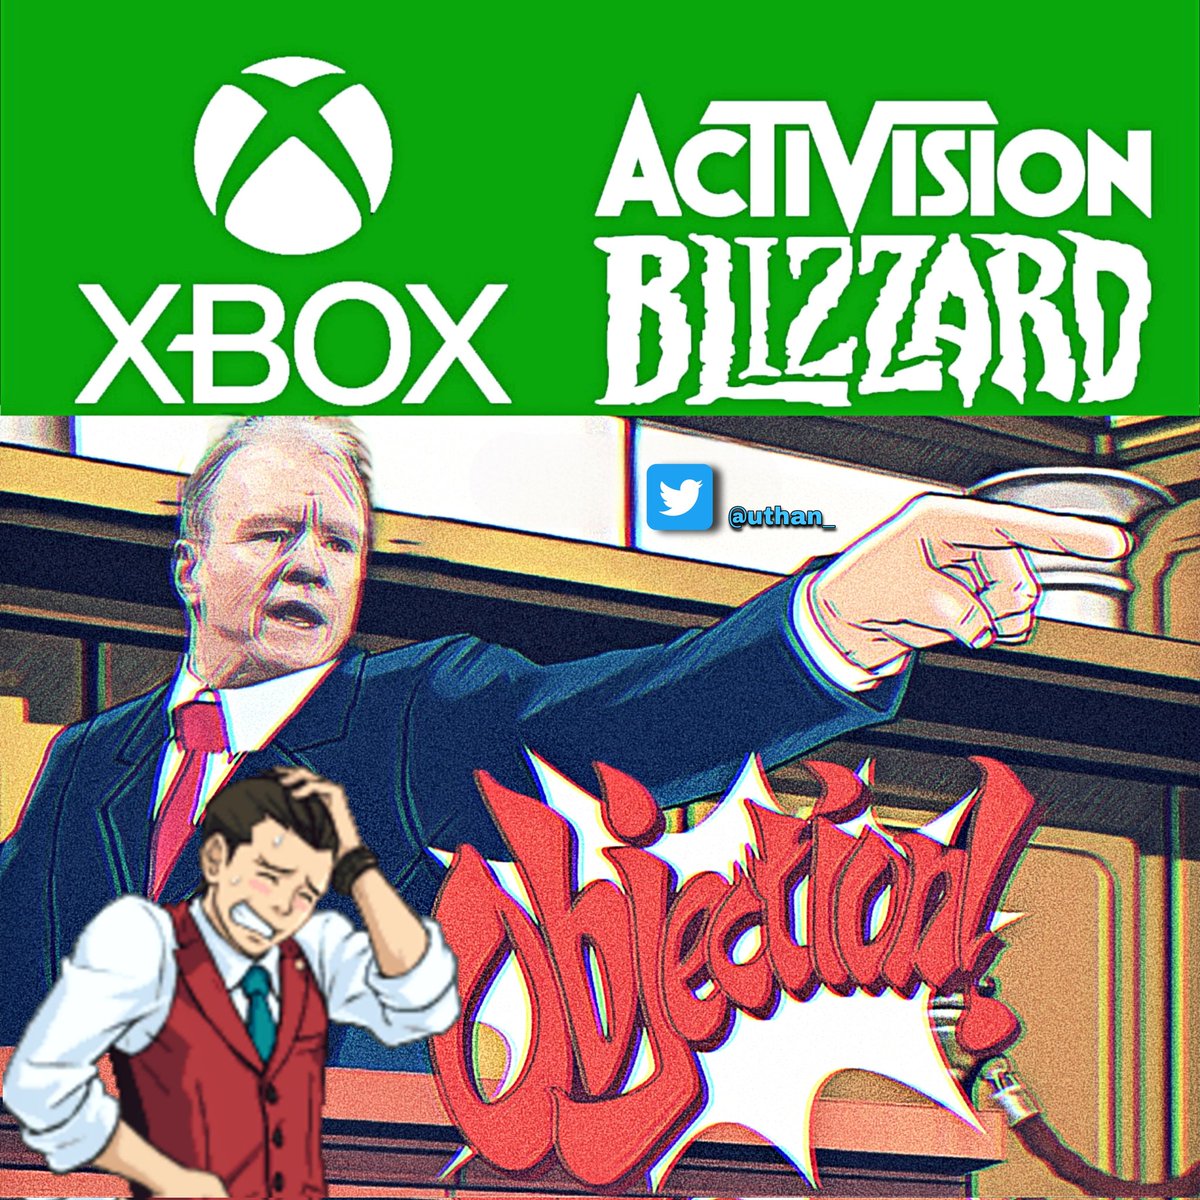 Al tratar de oponerse a la adquisición de #ActivisionBlizzard por Microsoft, #Sony está poniendo en línea de fuego sus propias prácticas de exclusividad. Si se confirma la adquisición Blizzard, #Sony trataría de adquirir #TakeTwoInteractive, el estudio detrás de los juegos #GTA